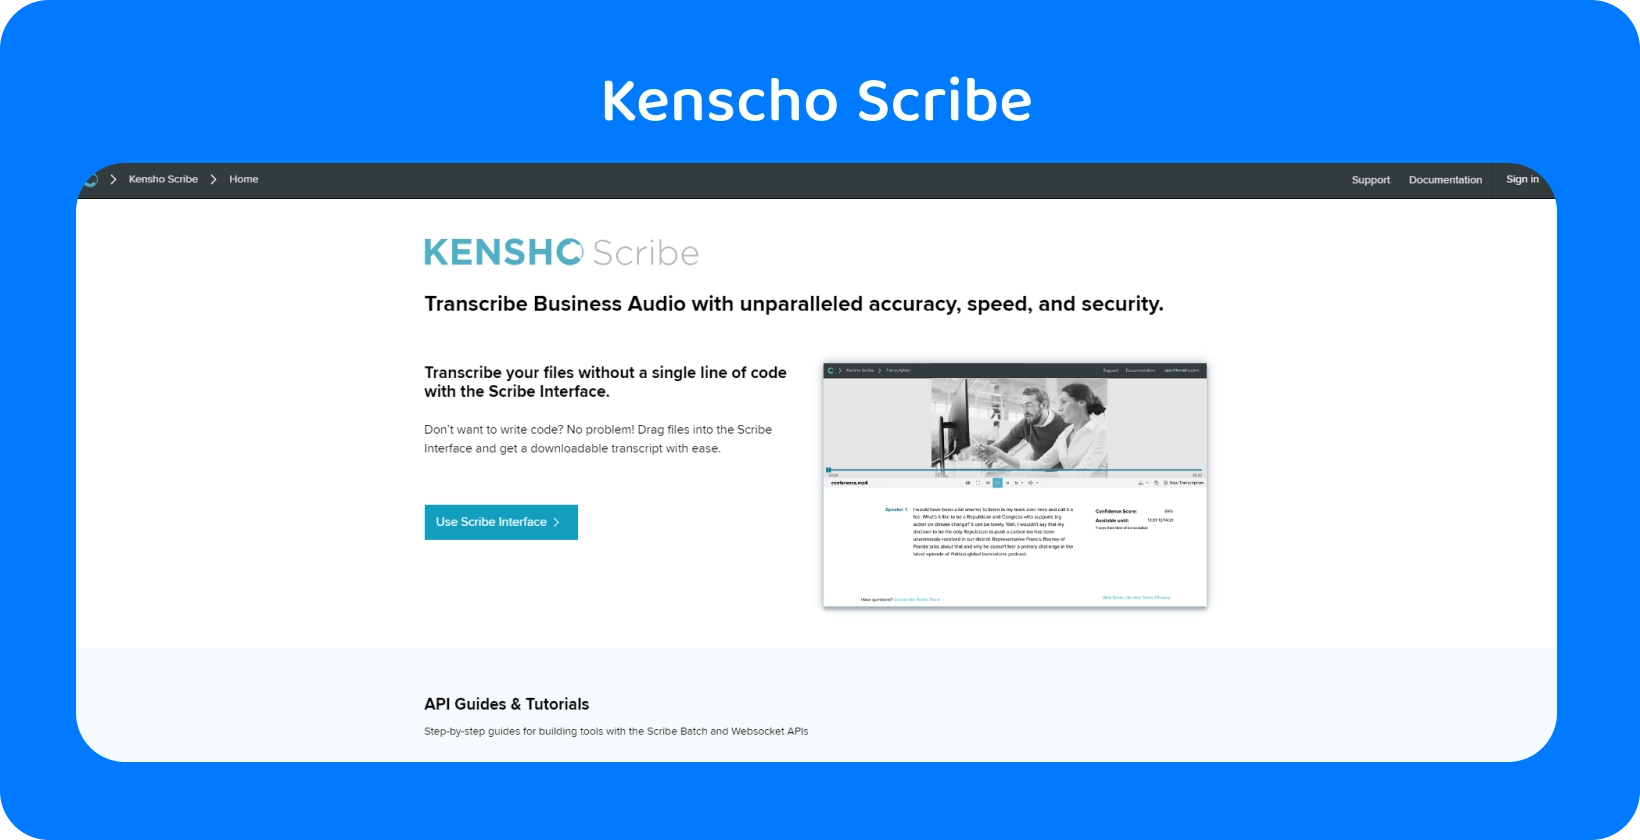 Kensho stranica web stranice s tekstom "RJEŠENJA", koja nudi napredne alate za AI koji nadopunjuju diktat Word.